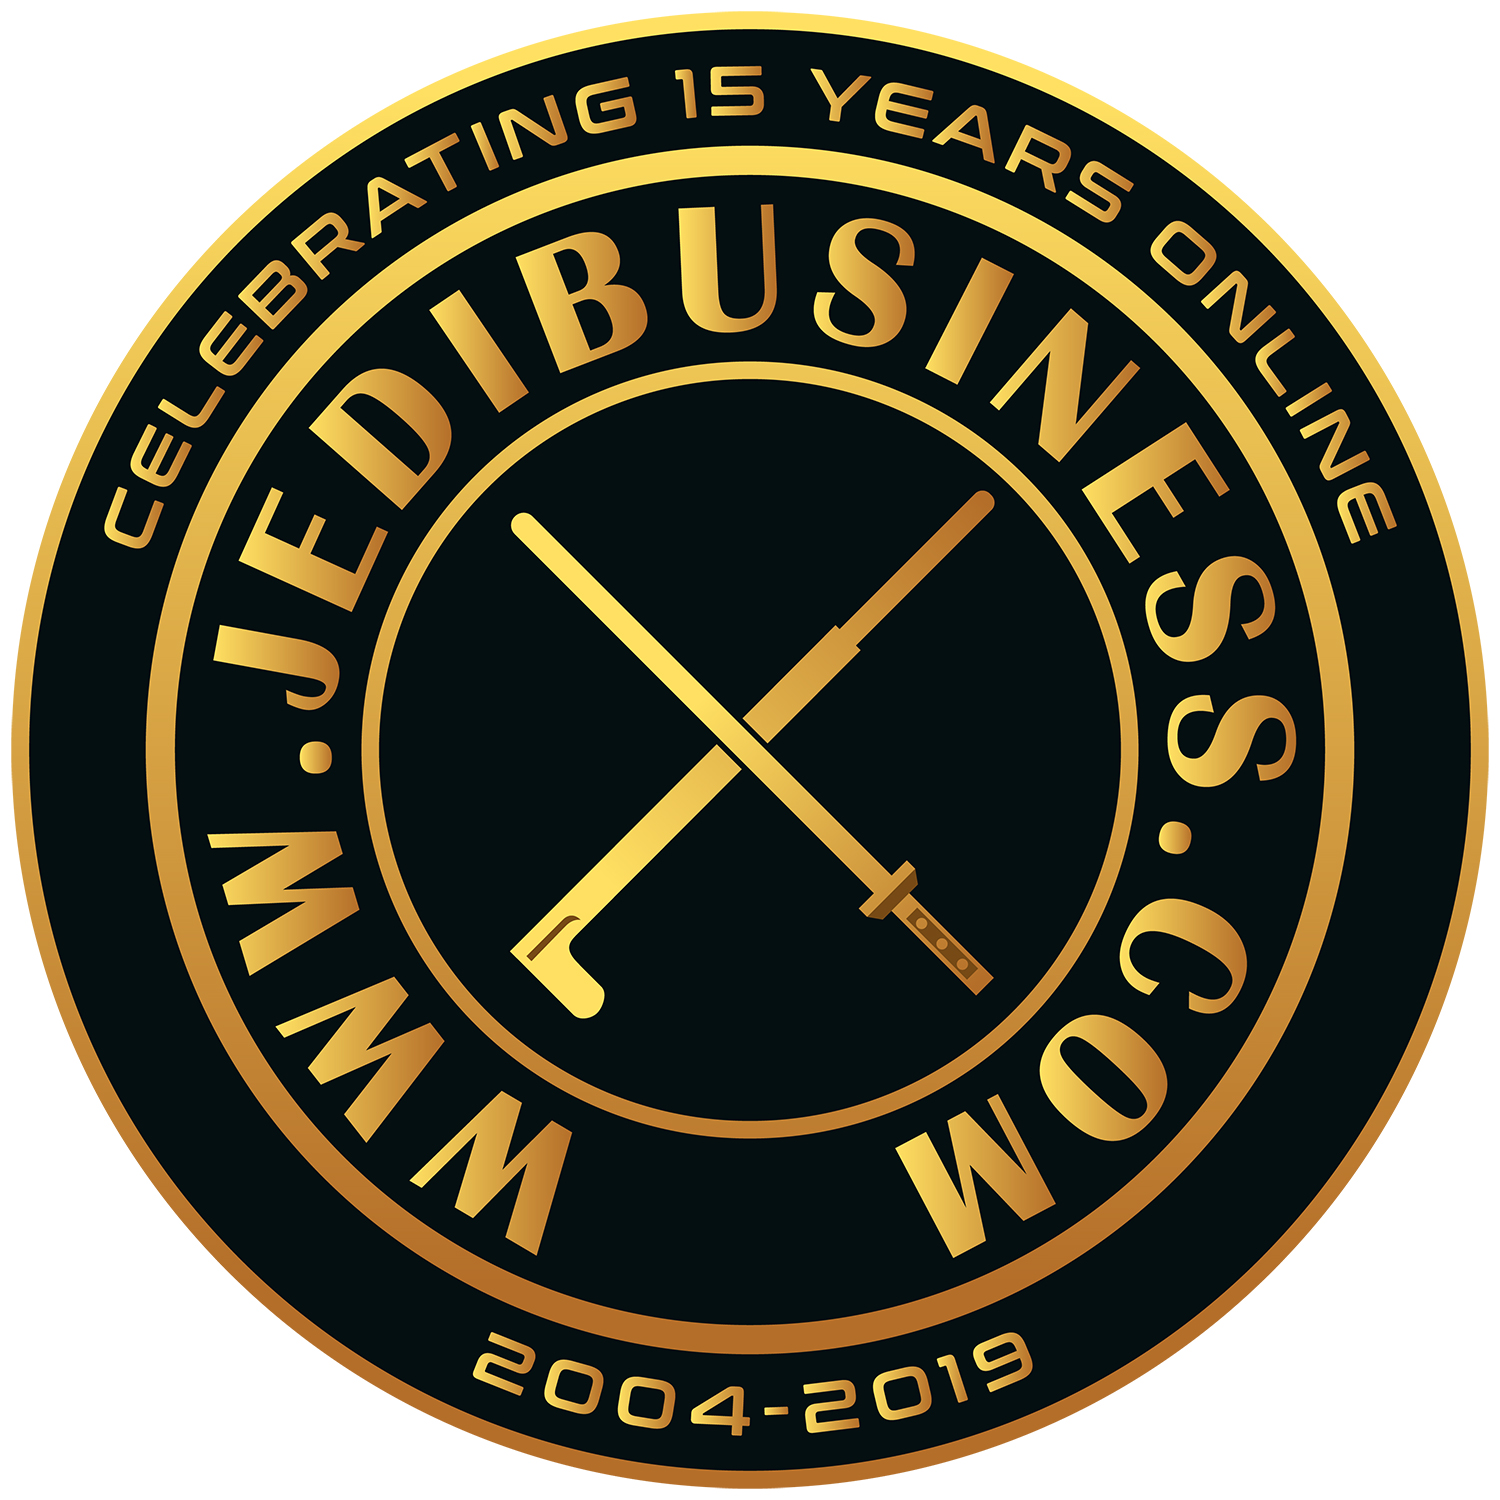 JediBusiness.com 15th Anniversary!